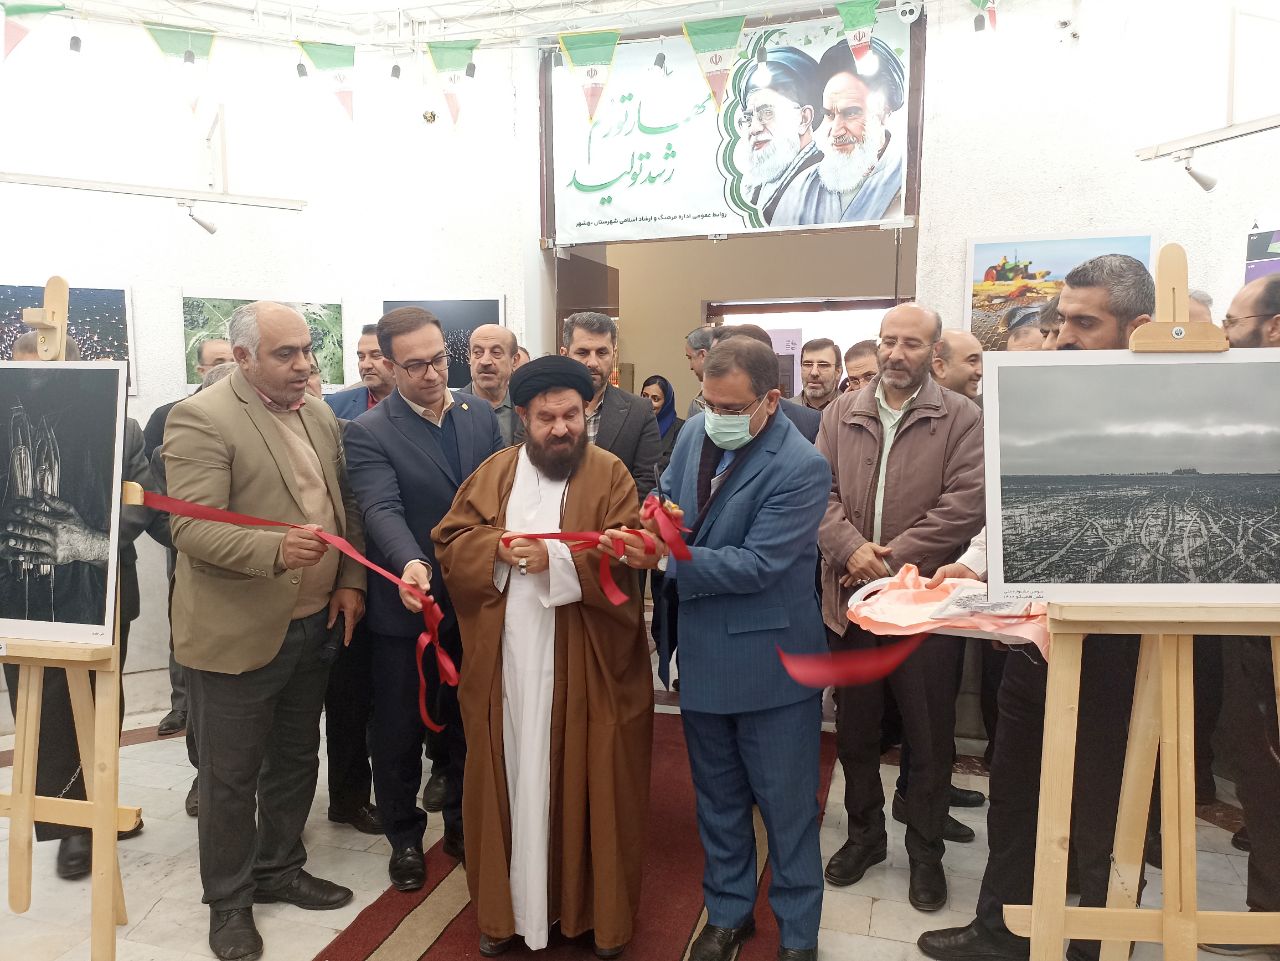 برپایی نمایشگاه ملی عکس فلامینگو در بهشهر